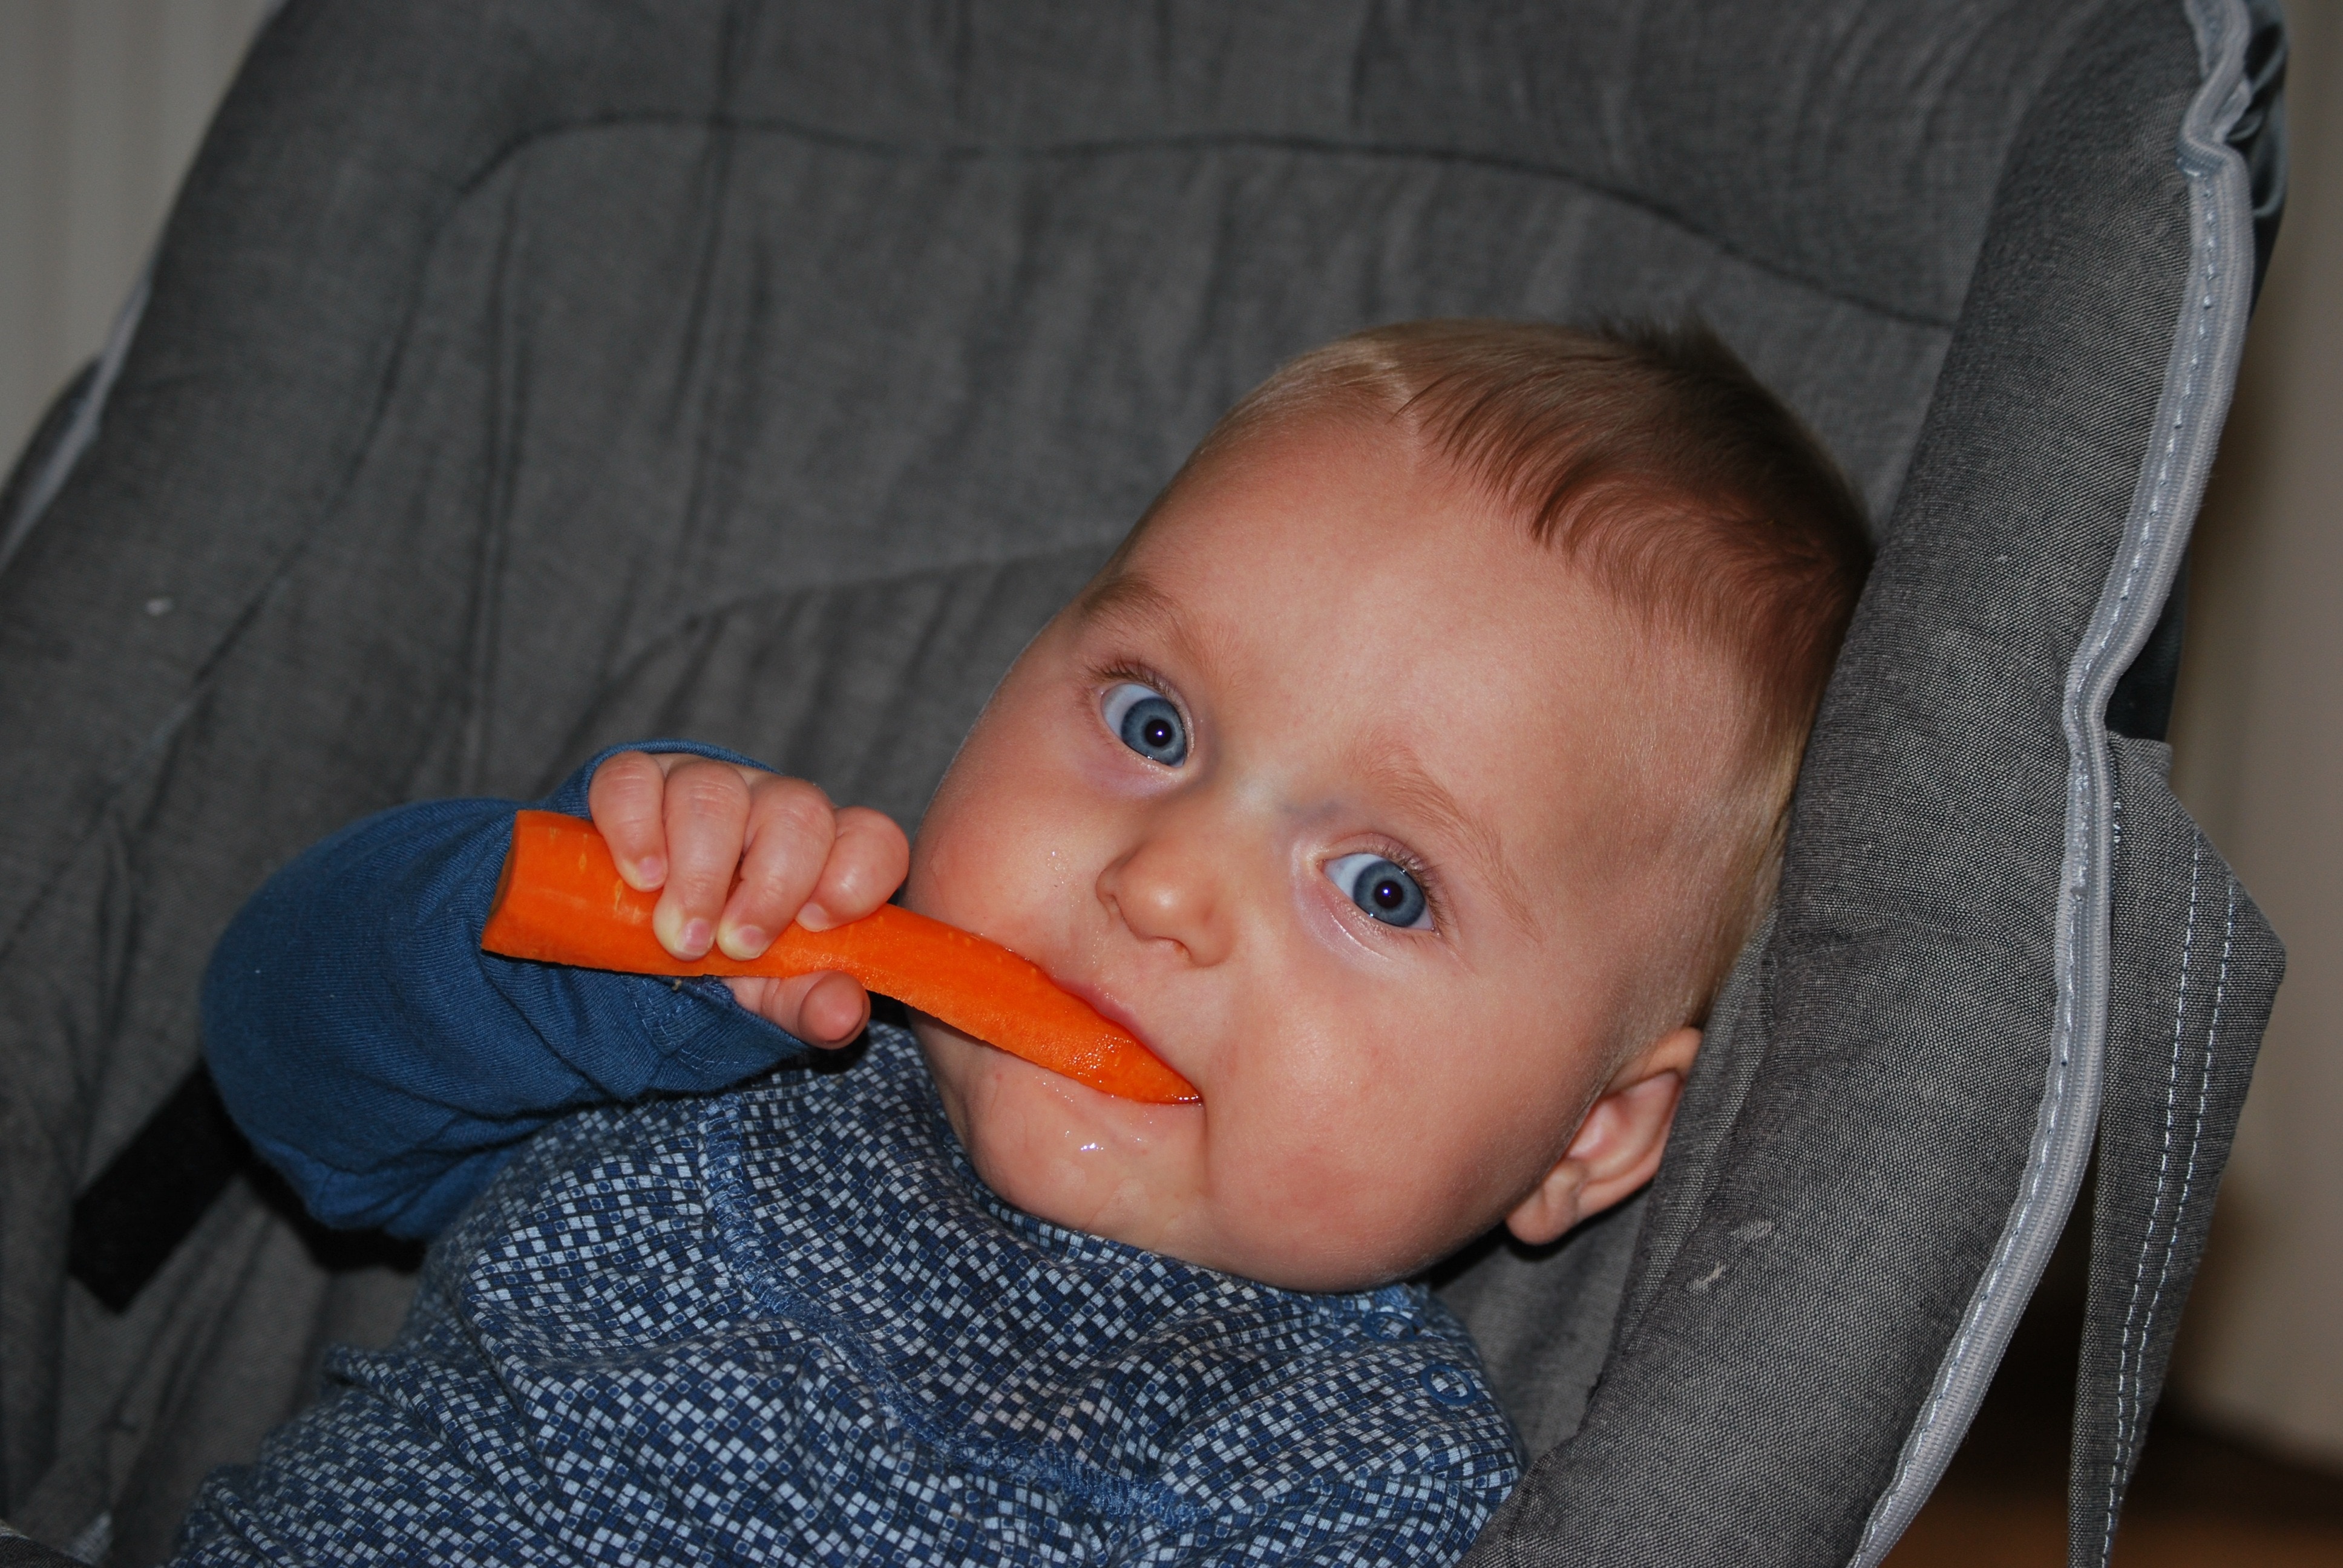 baby in blue shirt eating carrot on gray stroller